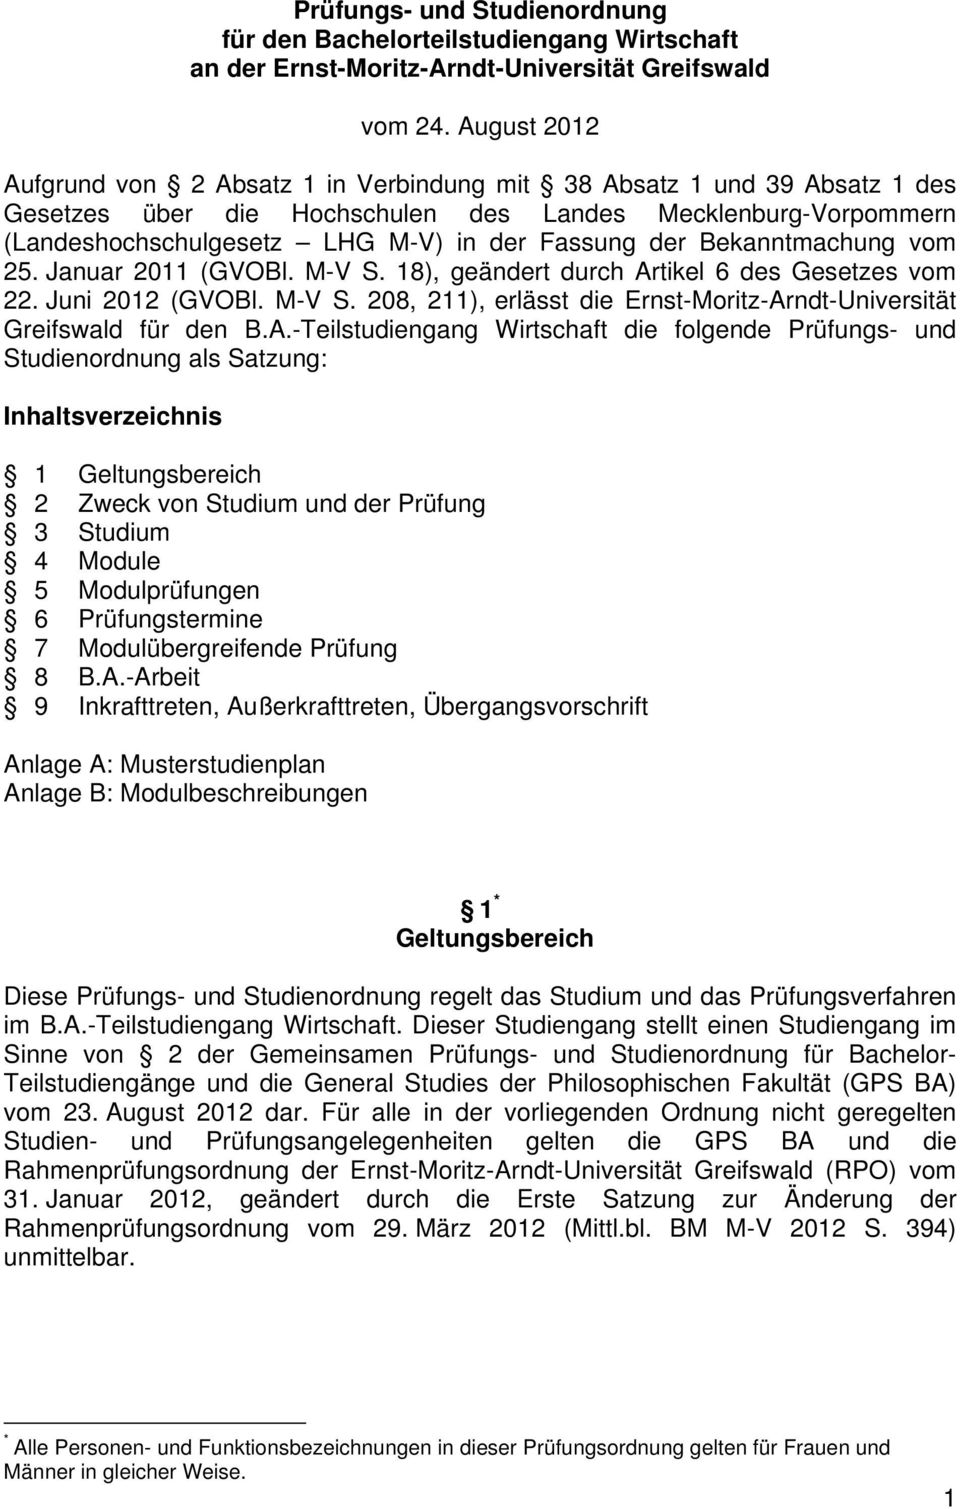 der Bekanntmachung vom 25. Januar 2011 (GVOBl. M-V S. 18), geändert durch Artikel 6 des Gesetzes vom 22. Juni 2012 (GVOBl. M-V S. 208, 211), erlässt die Ernst-Moritz-Arndt-Universität Greifswald für den B.